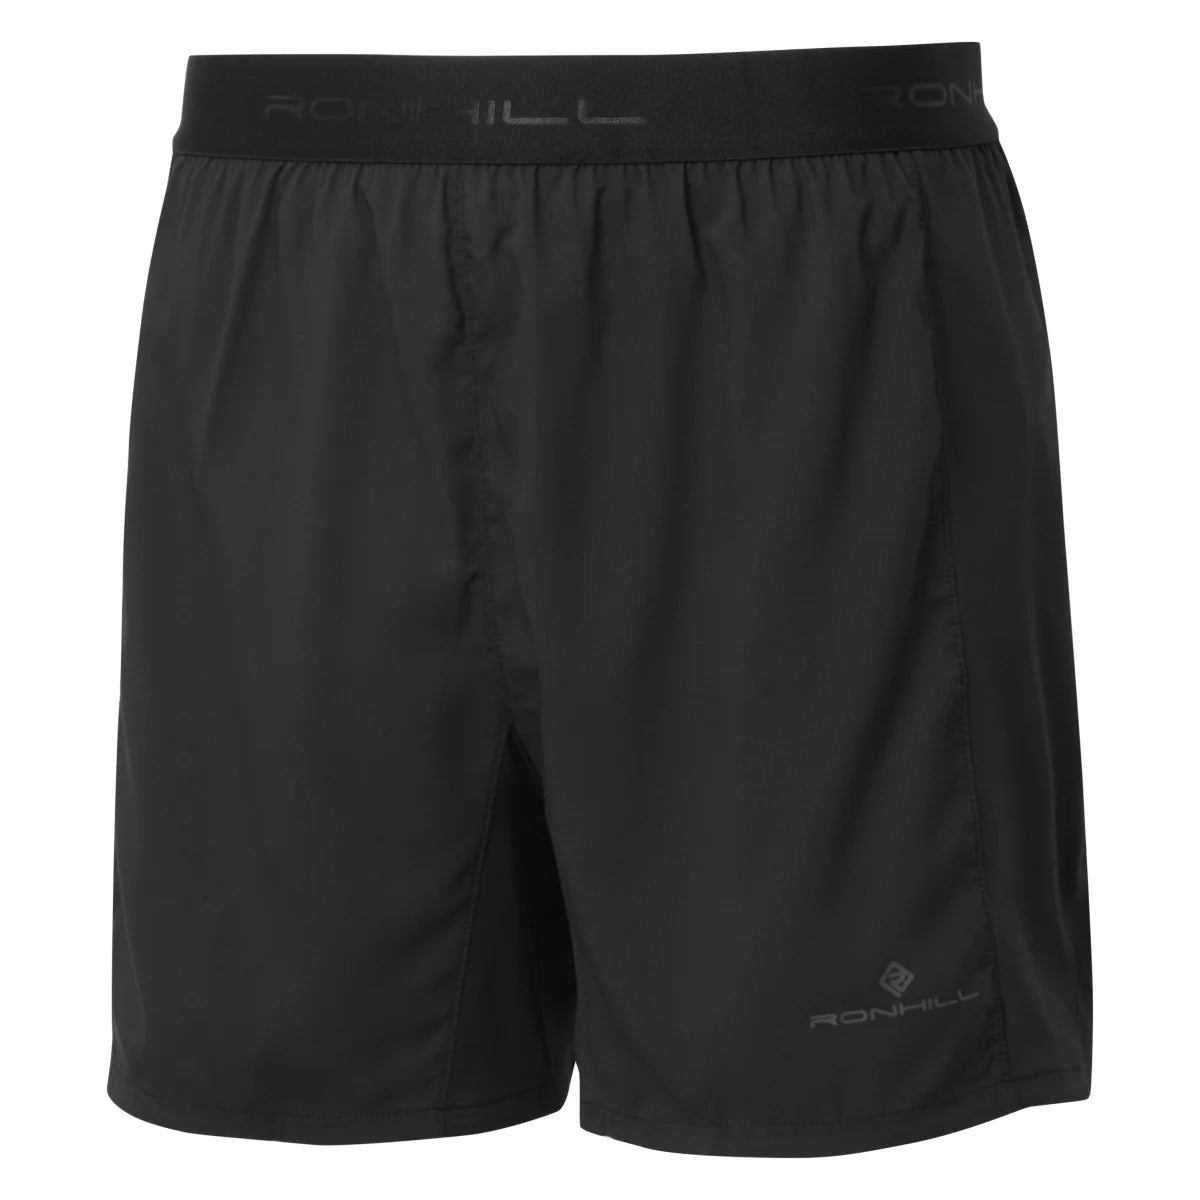 Men's Ronhill Tech Revive 5" Shorts